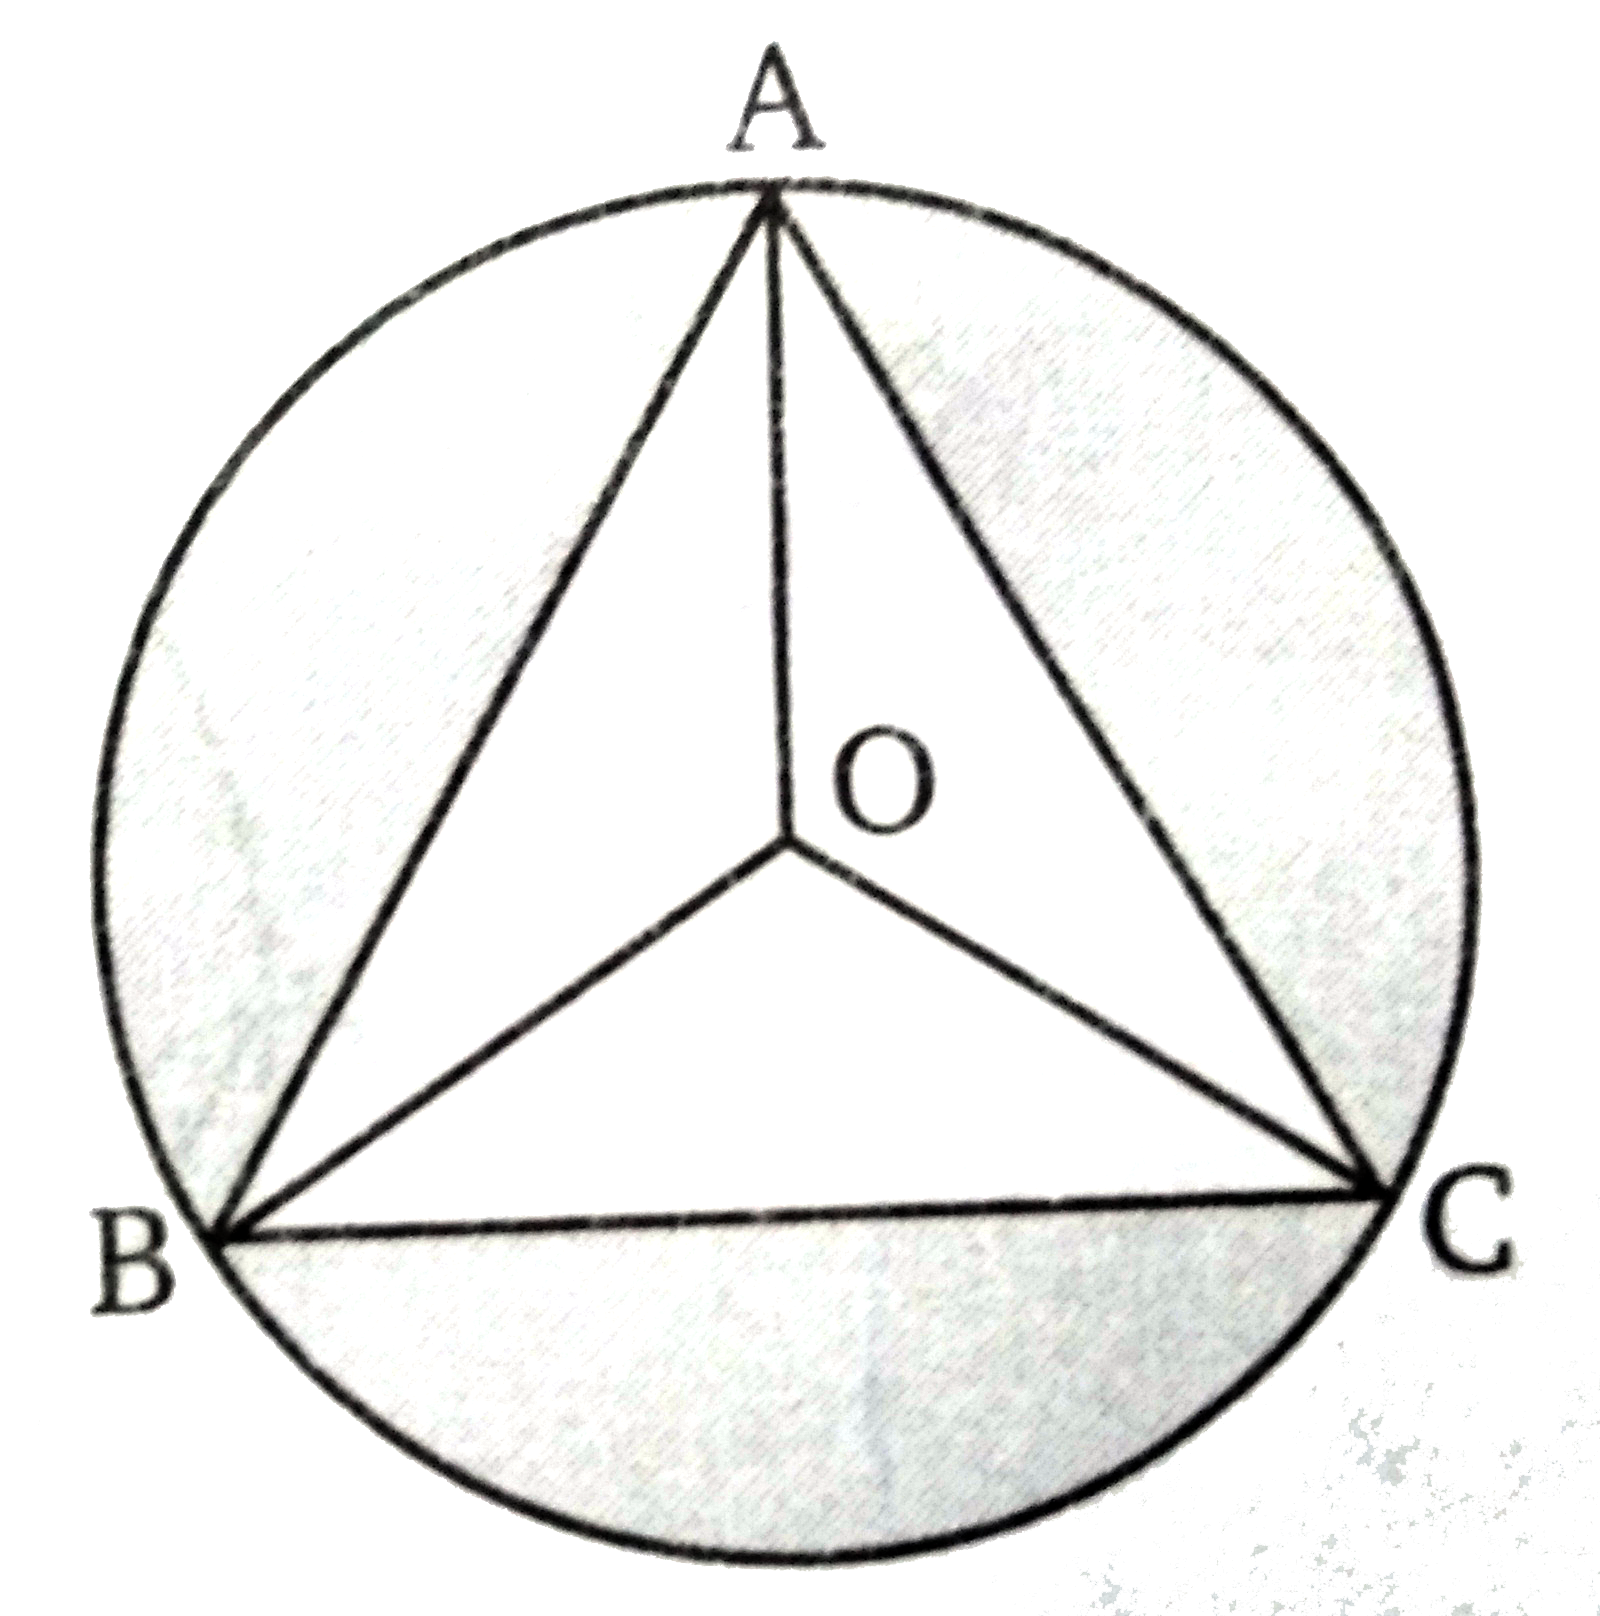 दिये  गये चित्र में, O केन्द्र वाले वृत्त के अंदर एक समबाहु Delta ABC  है तब angle BOC  का मान ज्ञात कीजिए।